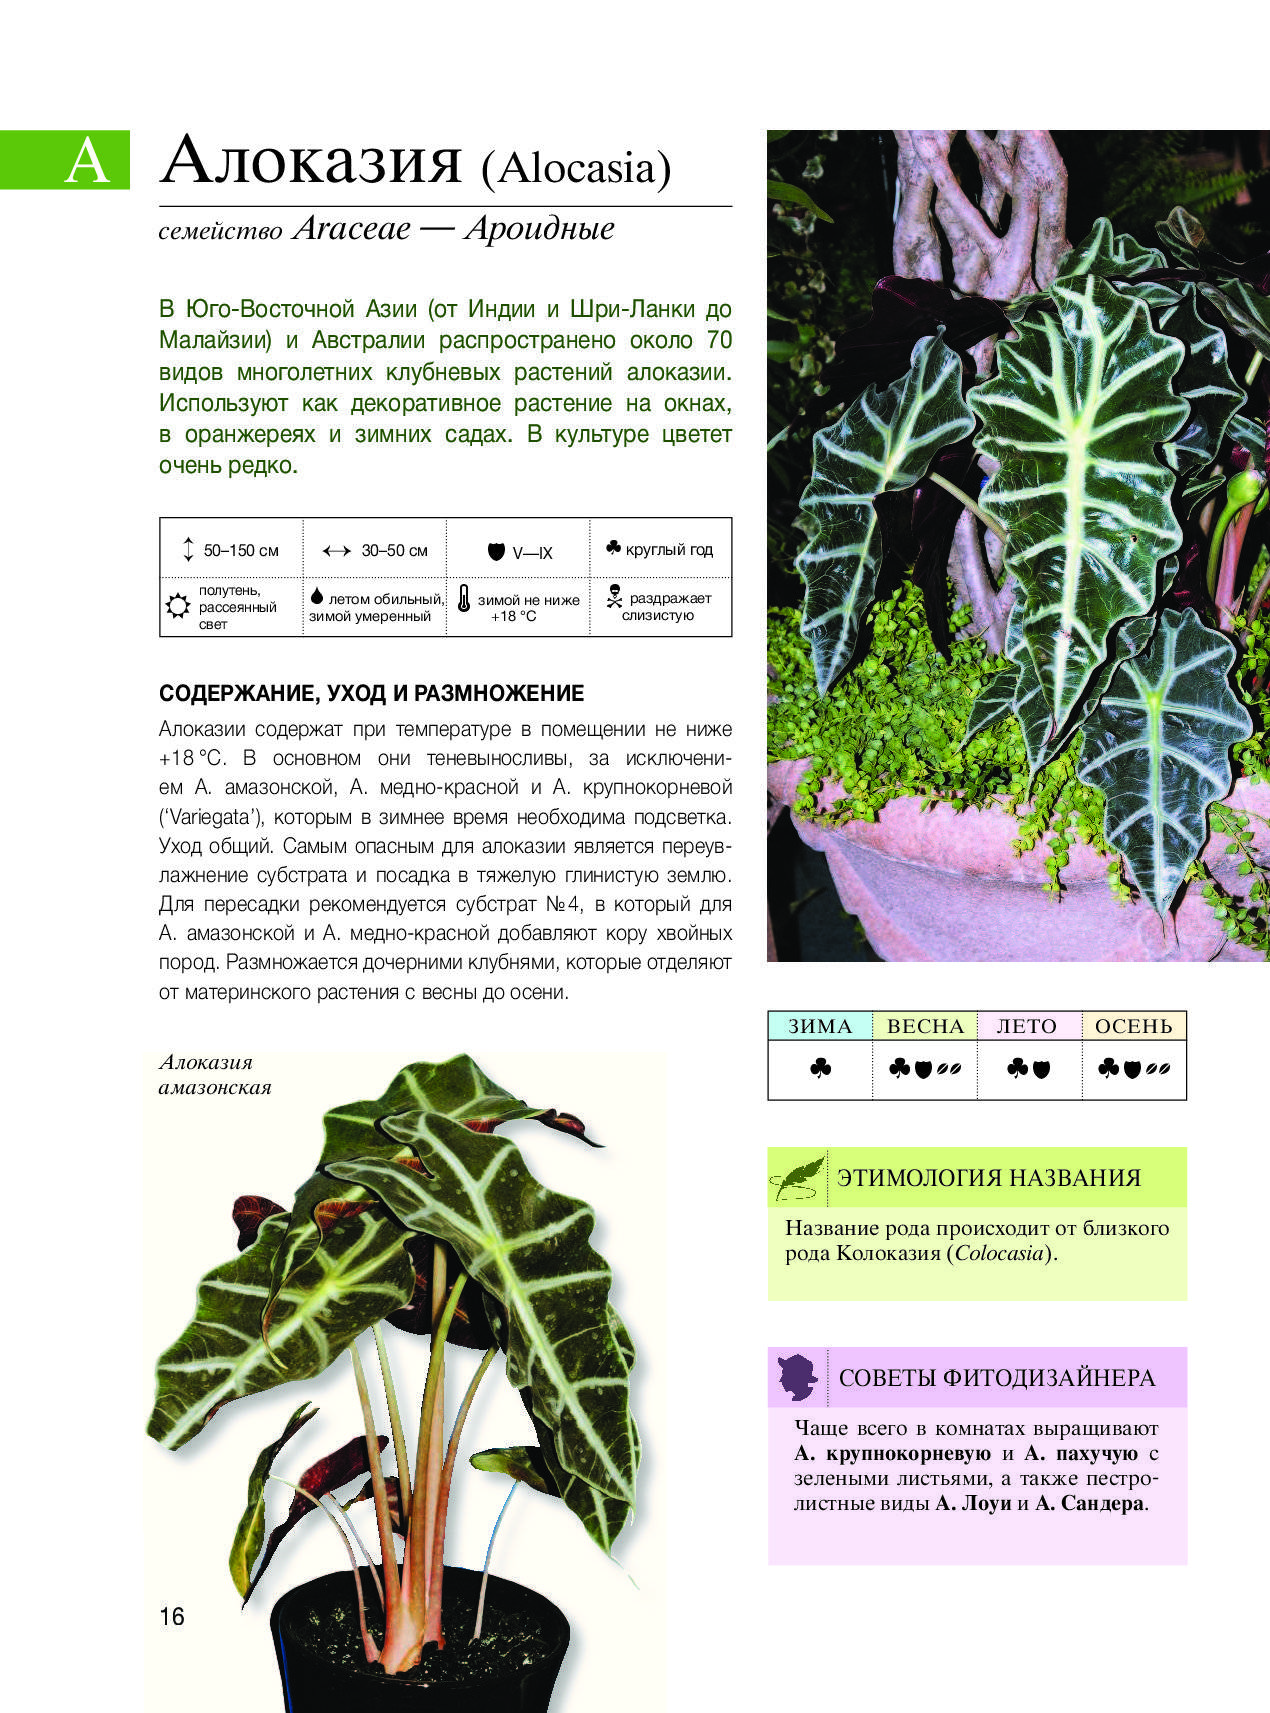 Ароидные araceae - описание, группы ароидных, уход и размножение